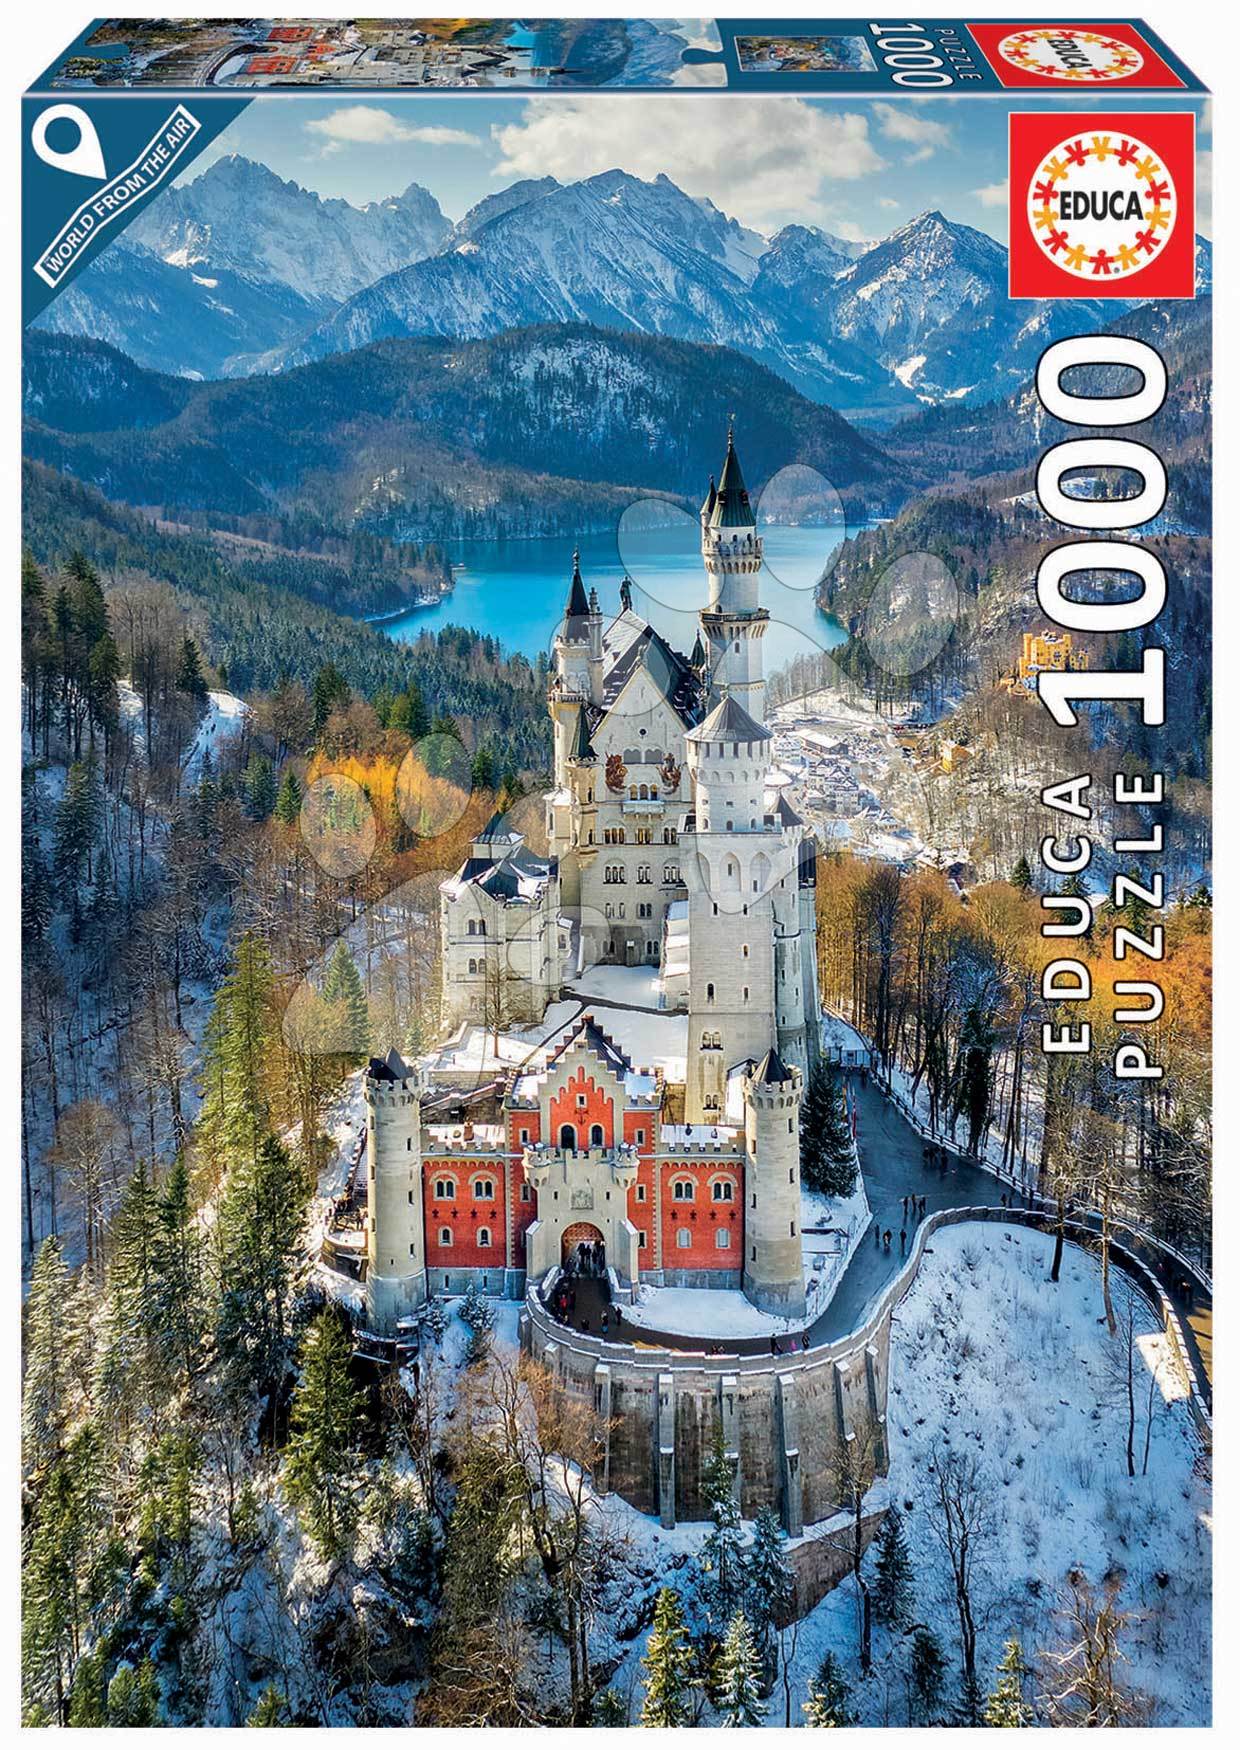 Puzzle Neuschwanstein Castle Educa 1000 dílků a Fix lepidlo